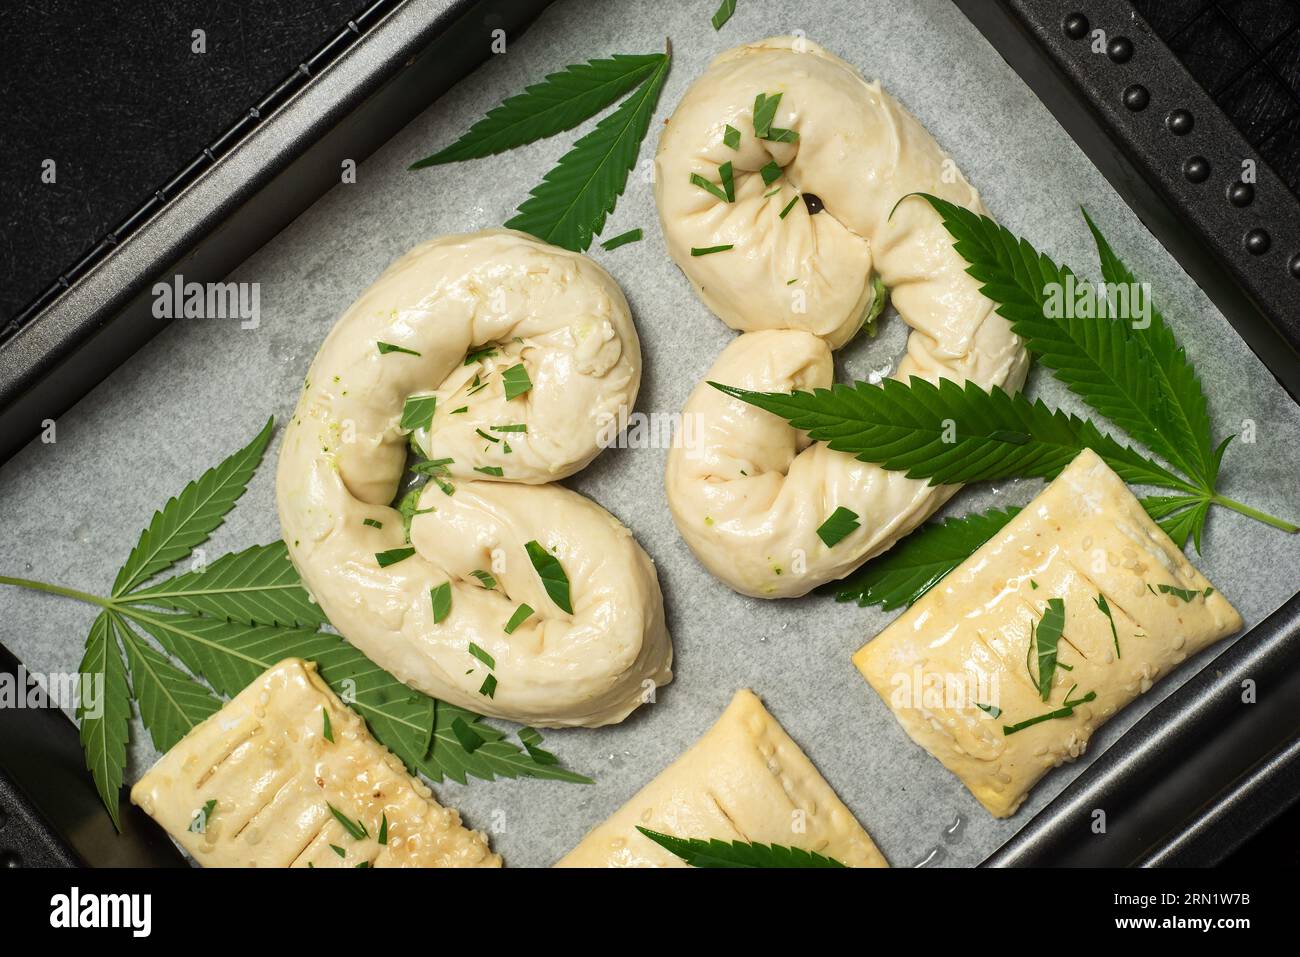 Nourriture avec cannabis. Tarte maison non cuite, décorée avec des feuilles de marijuana verte dans un plat allant au four sur marbre noir Banque D'Images